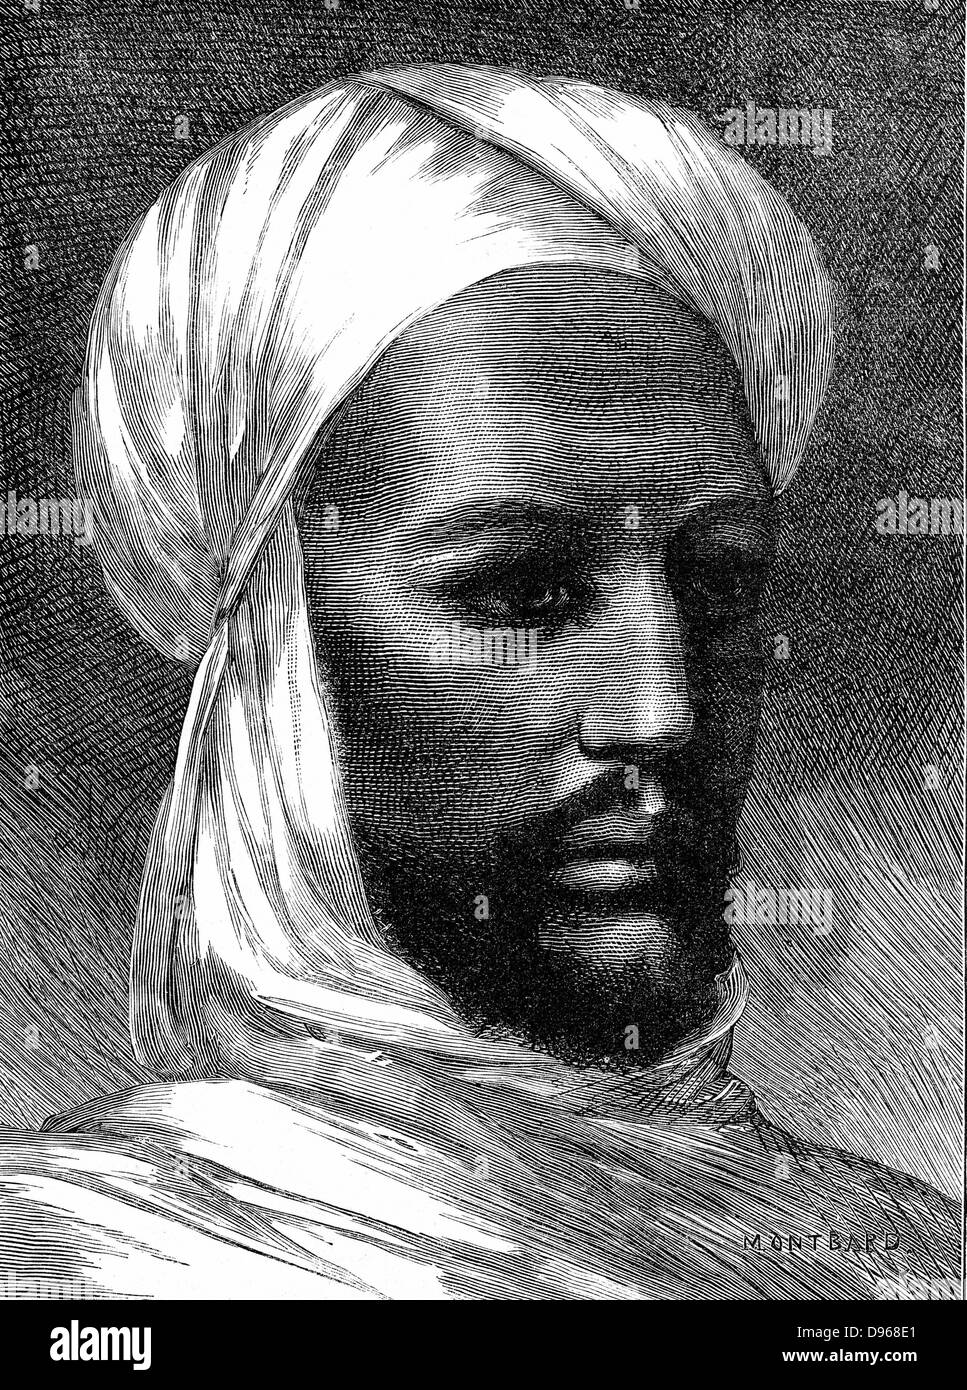 Der Mahdi (Mohammed Ahmed 1848-85) Charismatischen muslimischen Führer, Sklavenhändler, rebellieren gegen die ägyptische Herrschaft im östlichen Sudan. Besiegt Briten unter Gordon in Khartum im Jahr 1885. Holzstich. Stockfoto